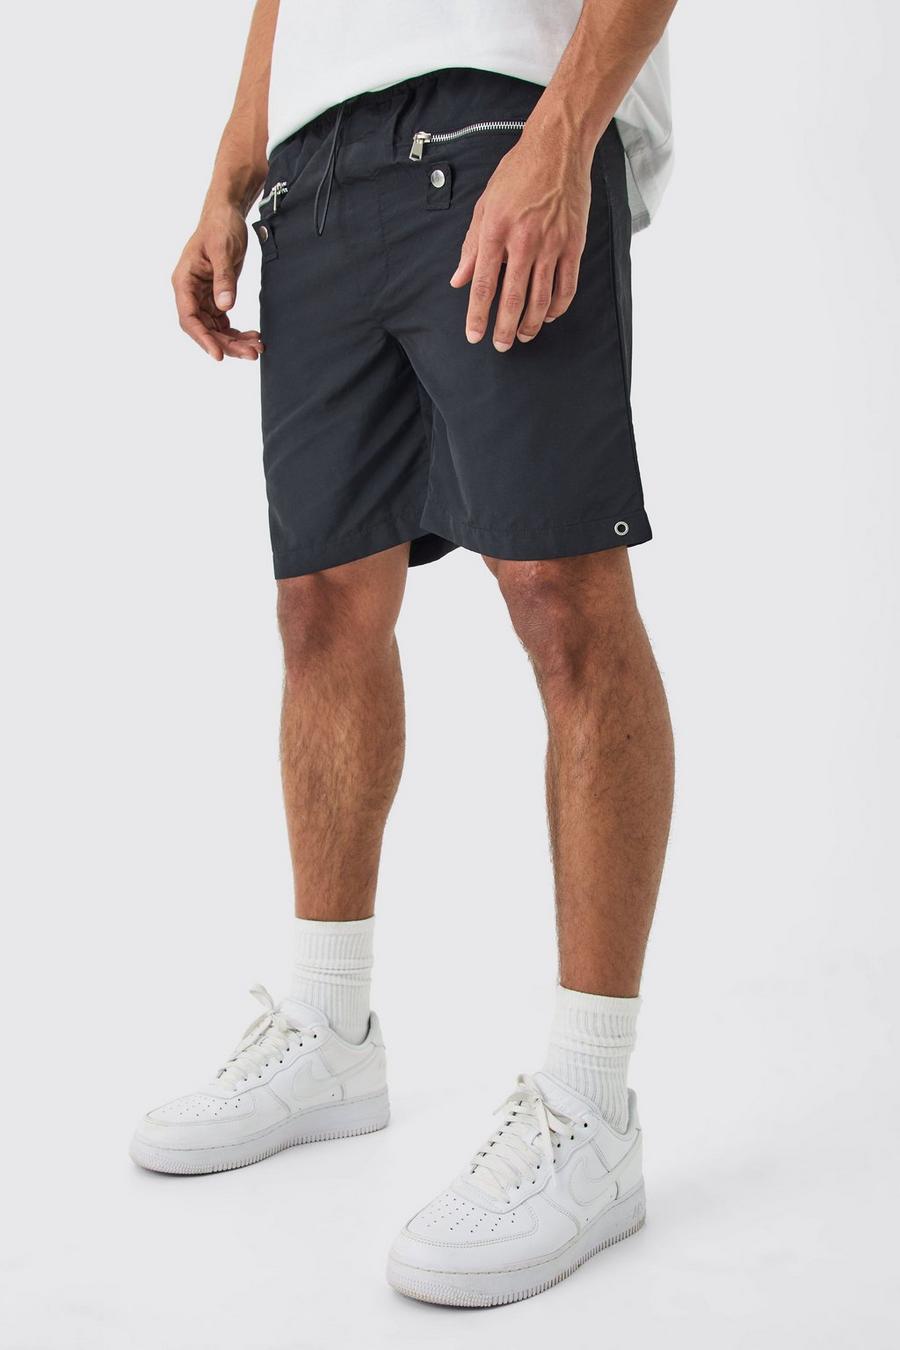 Lockere Shorts mit Reißverschluss-Detail, Black